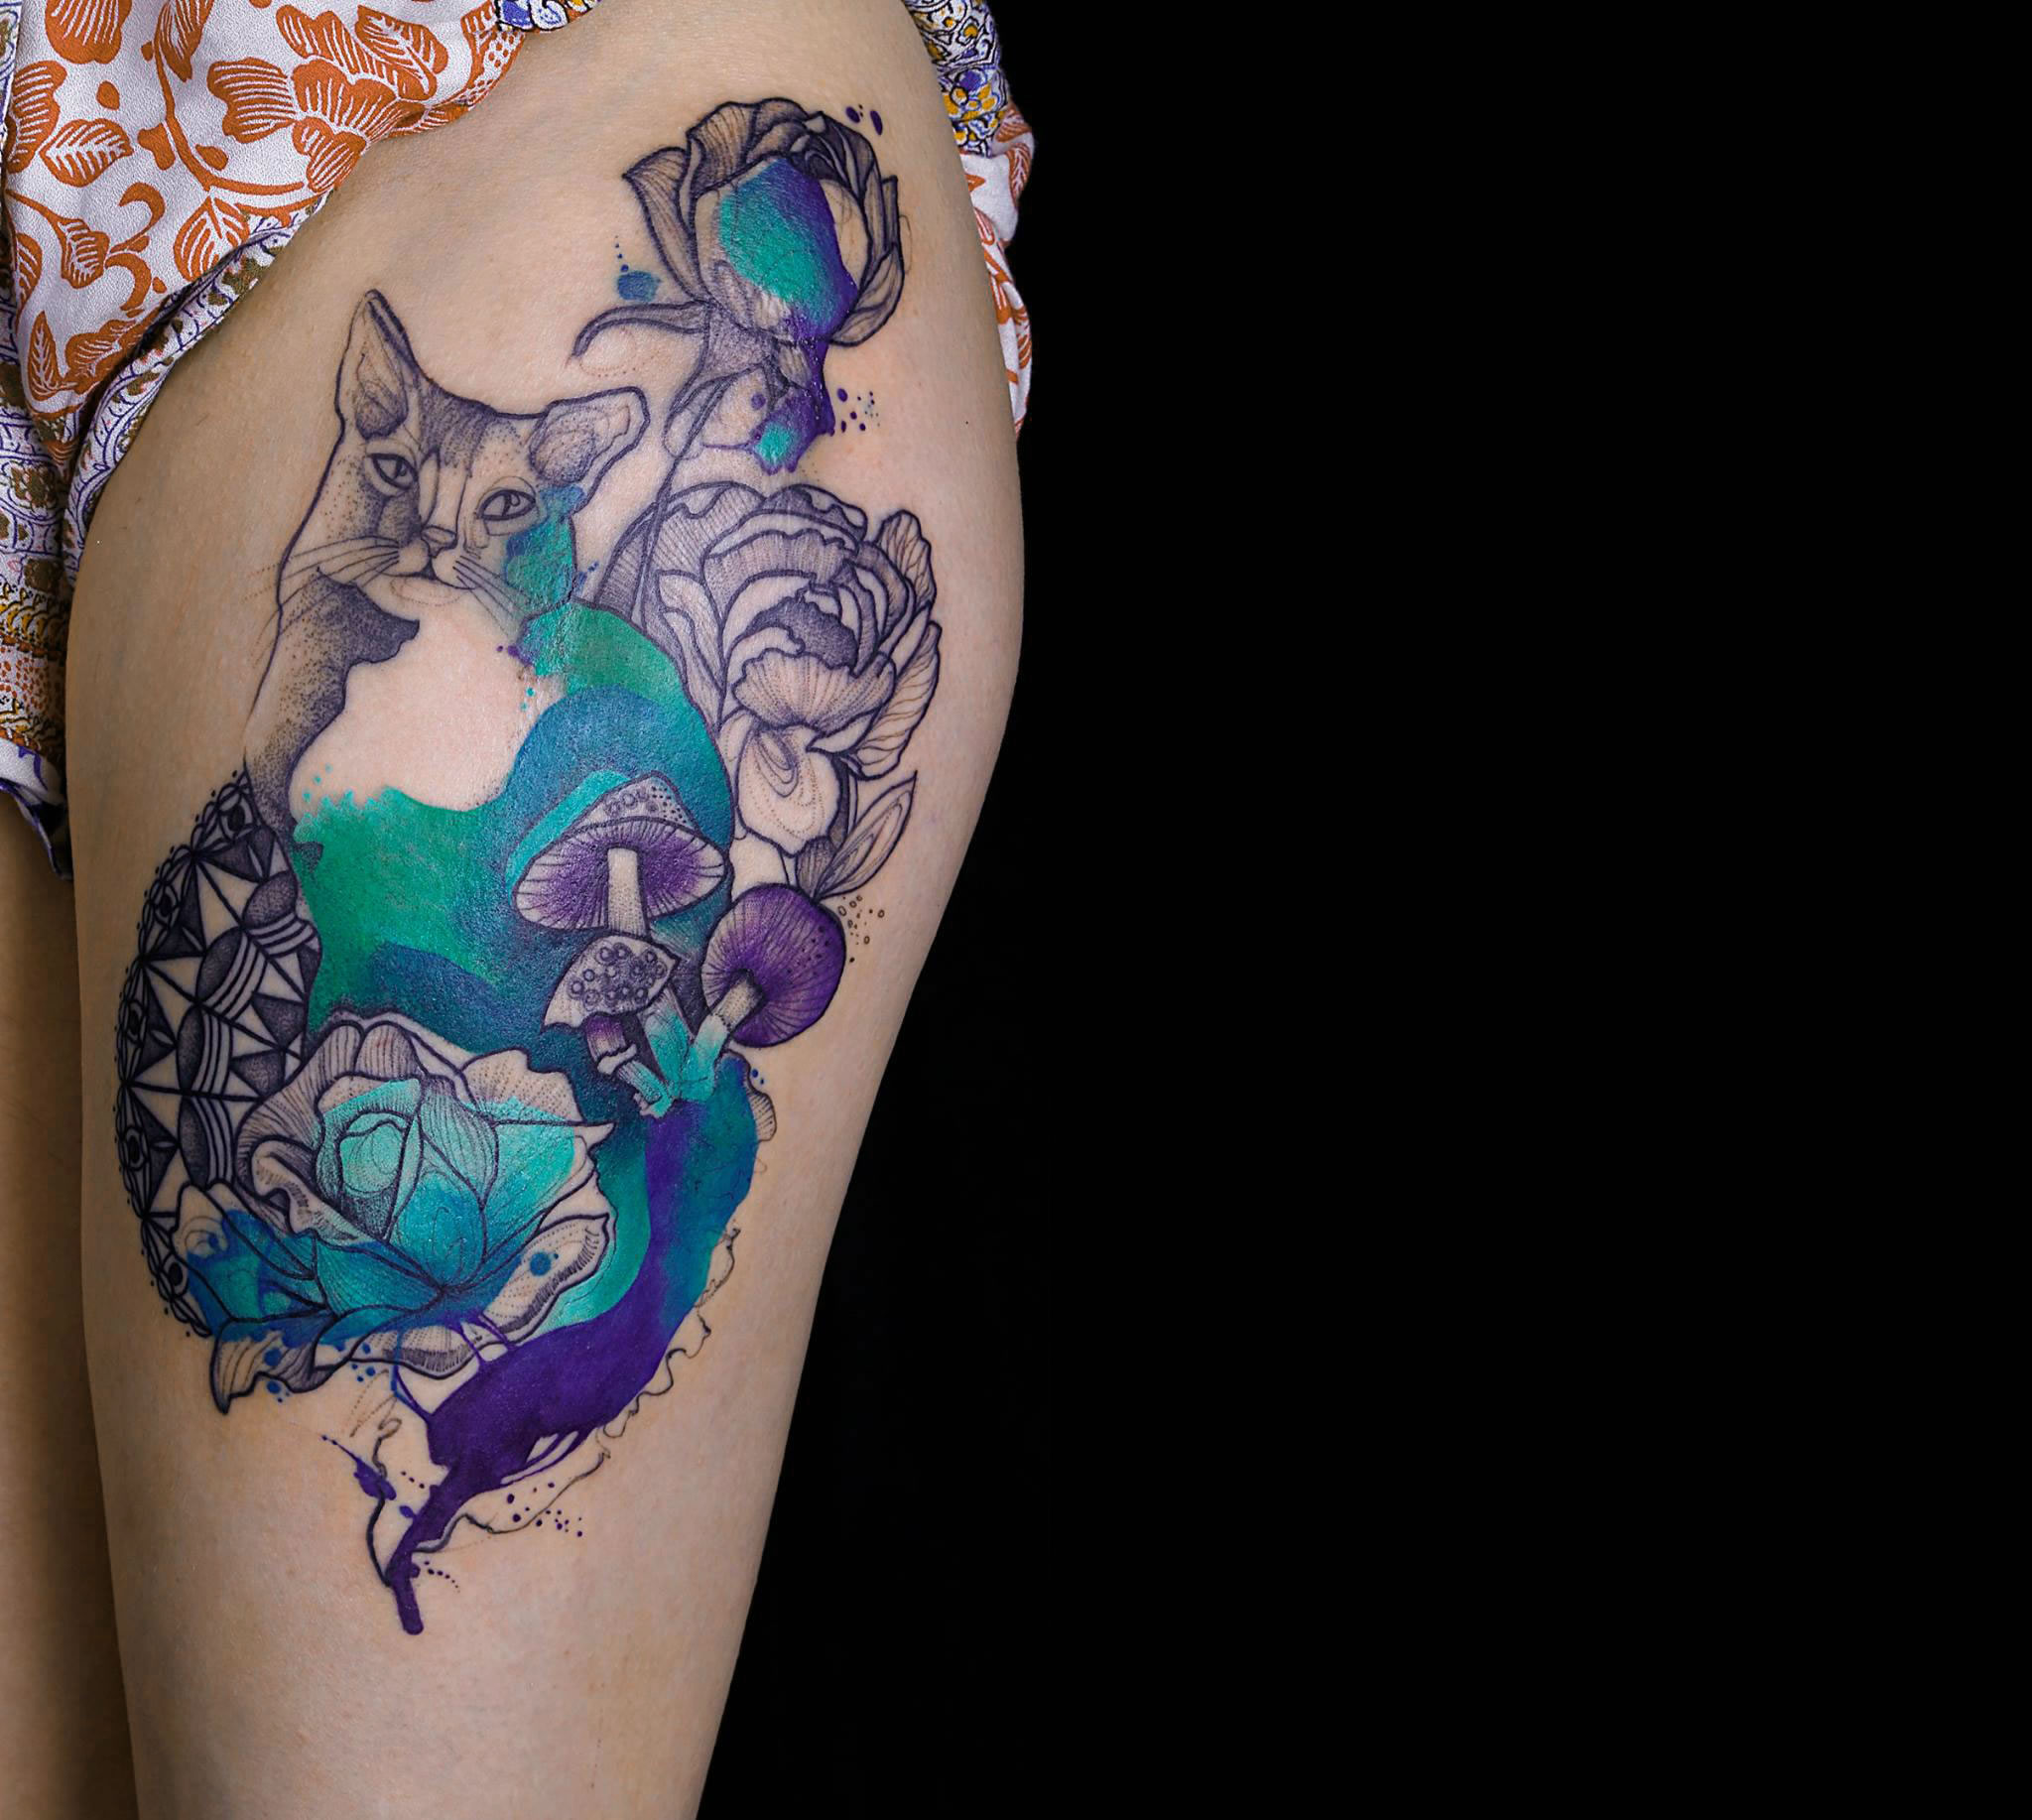 Joanna Swirska dzolama tattoo artist cat tattoo